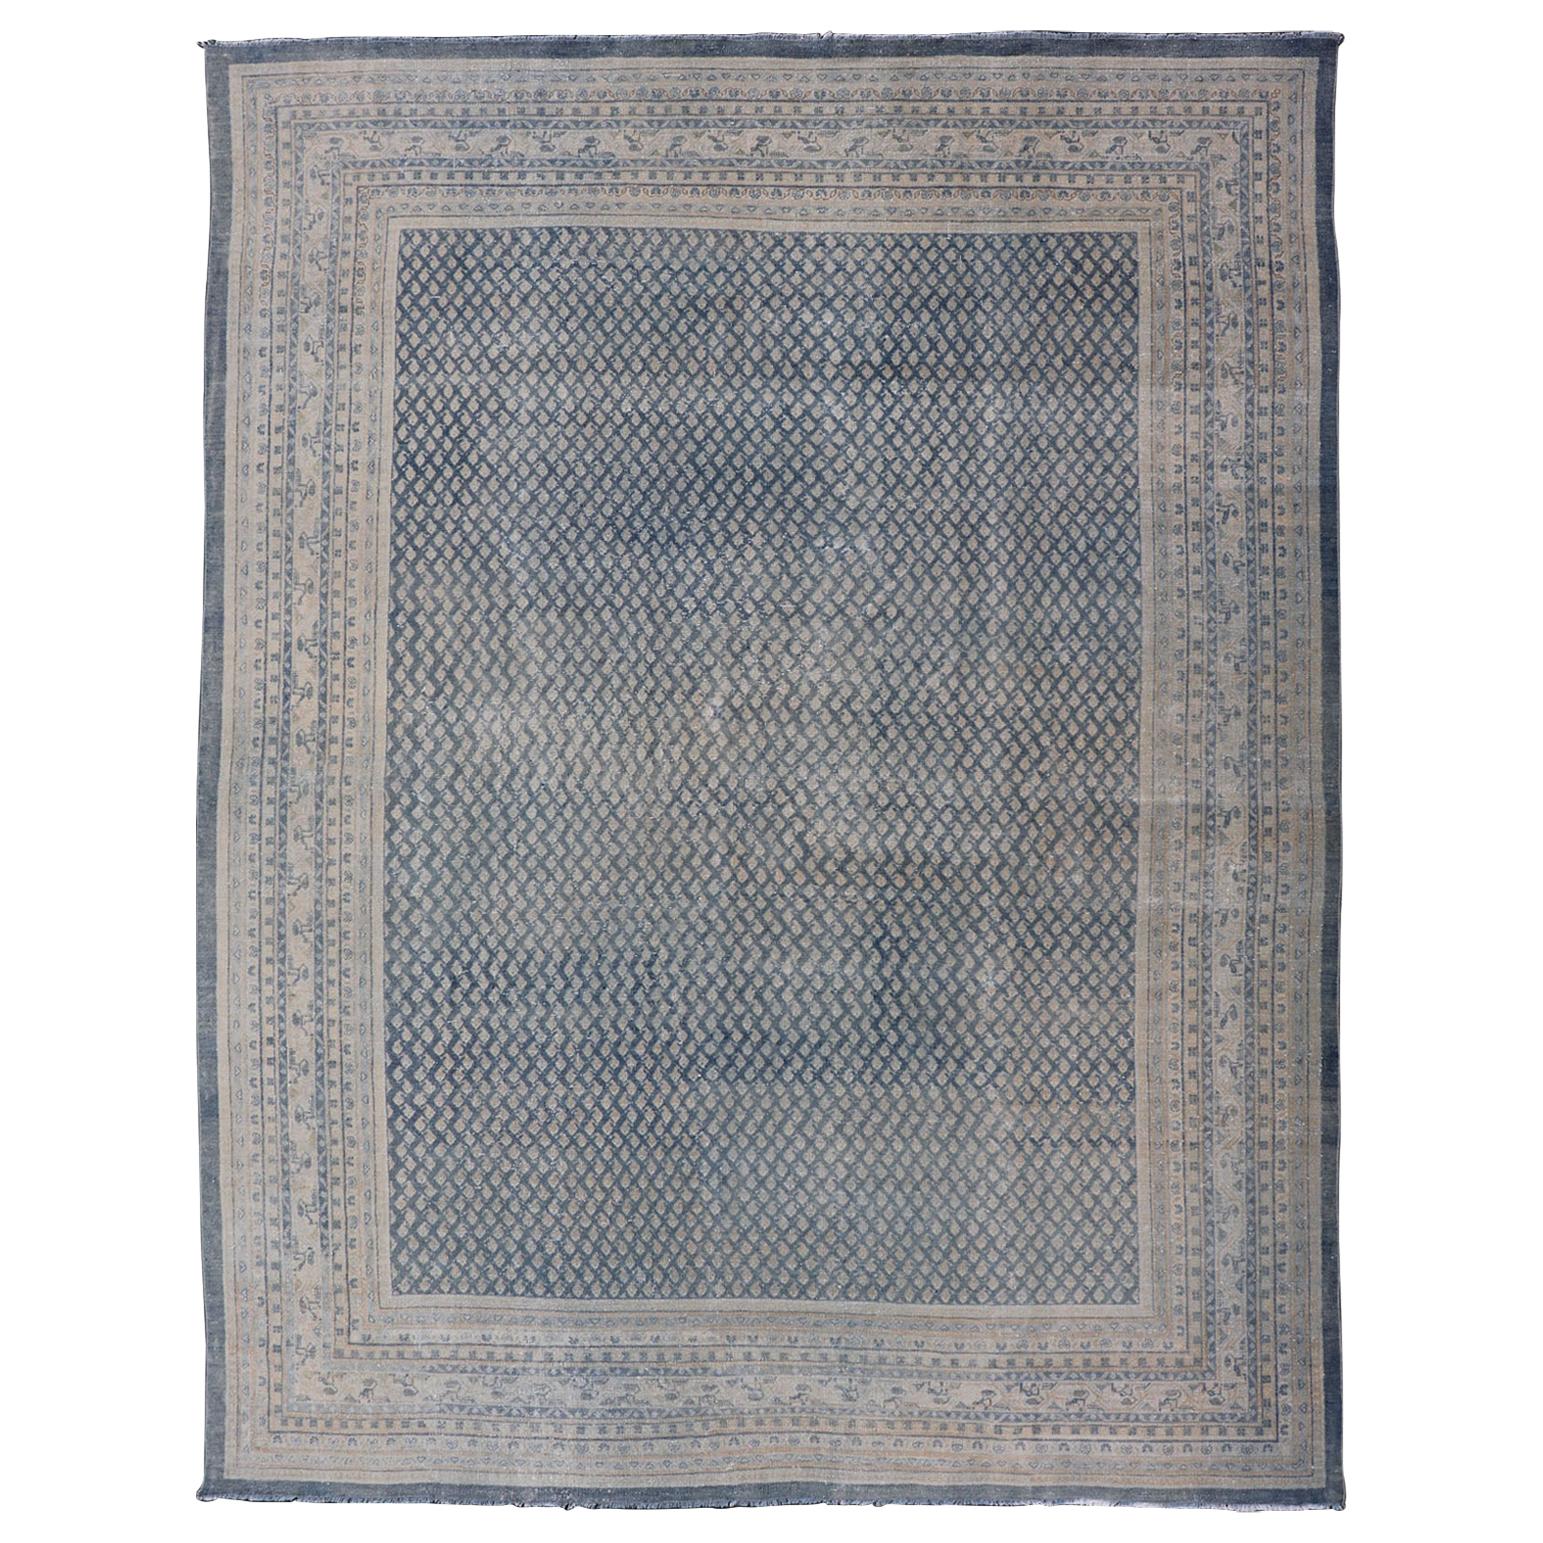 Tapis persan ancien de Tabriz au design minimaliste avec un aspect moderne dans les tons bleus